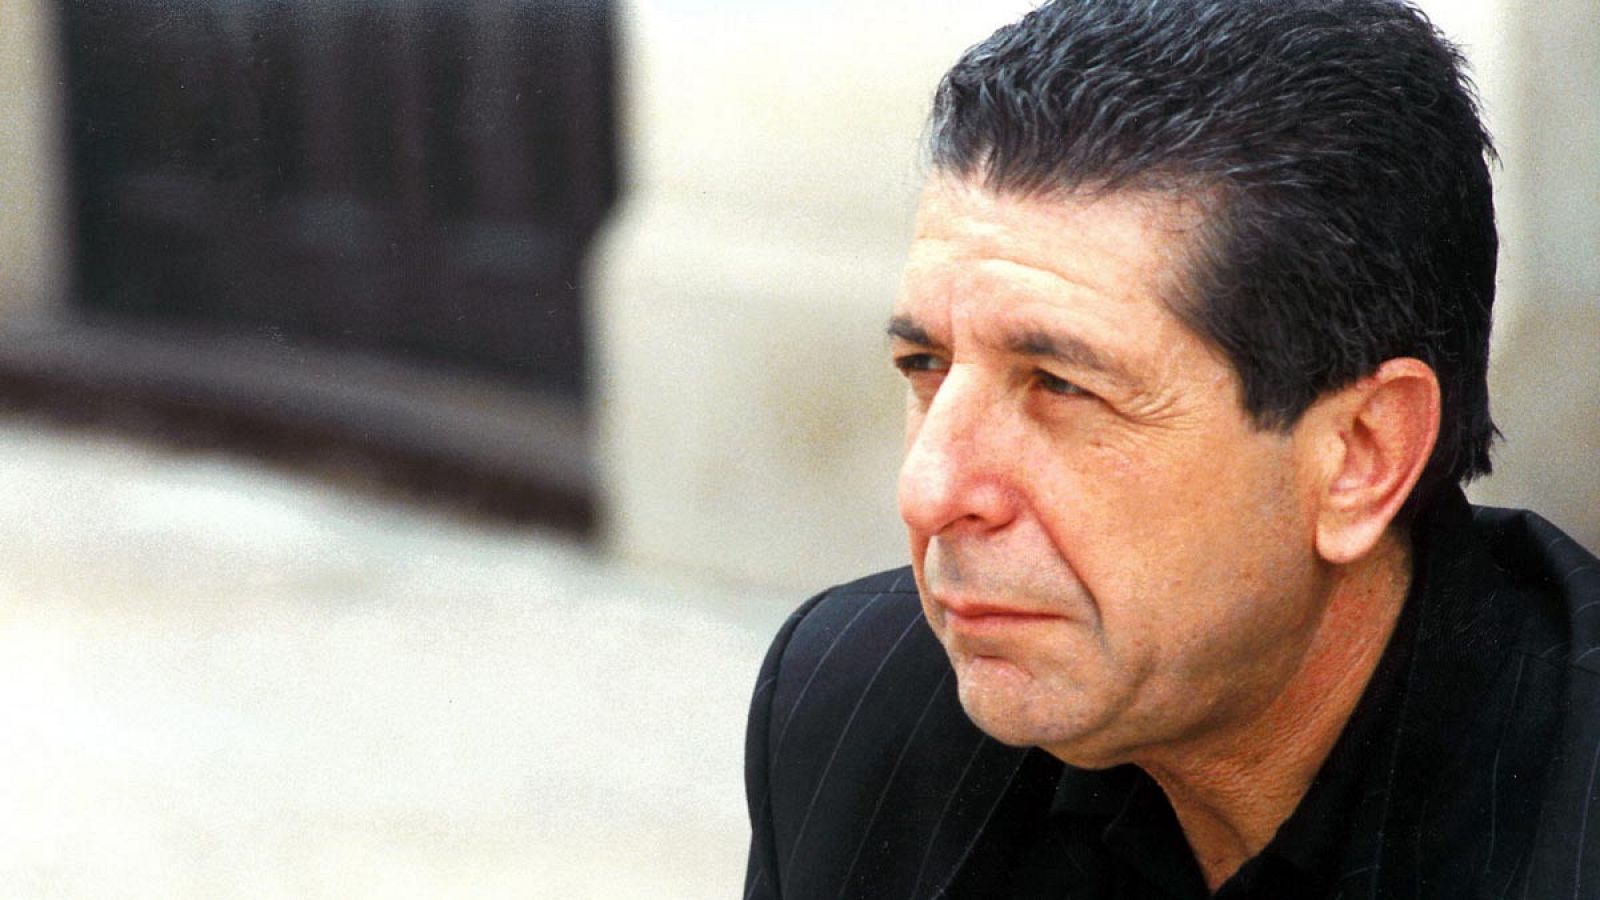 Fotografí­a de archivo (1-6-88) del cantante canadiense Leonard Cohen durante una visita a la casa natal del escritor Federico Garcia Lorca, en Granada.